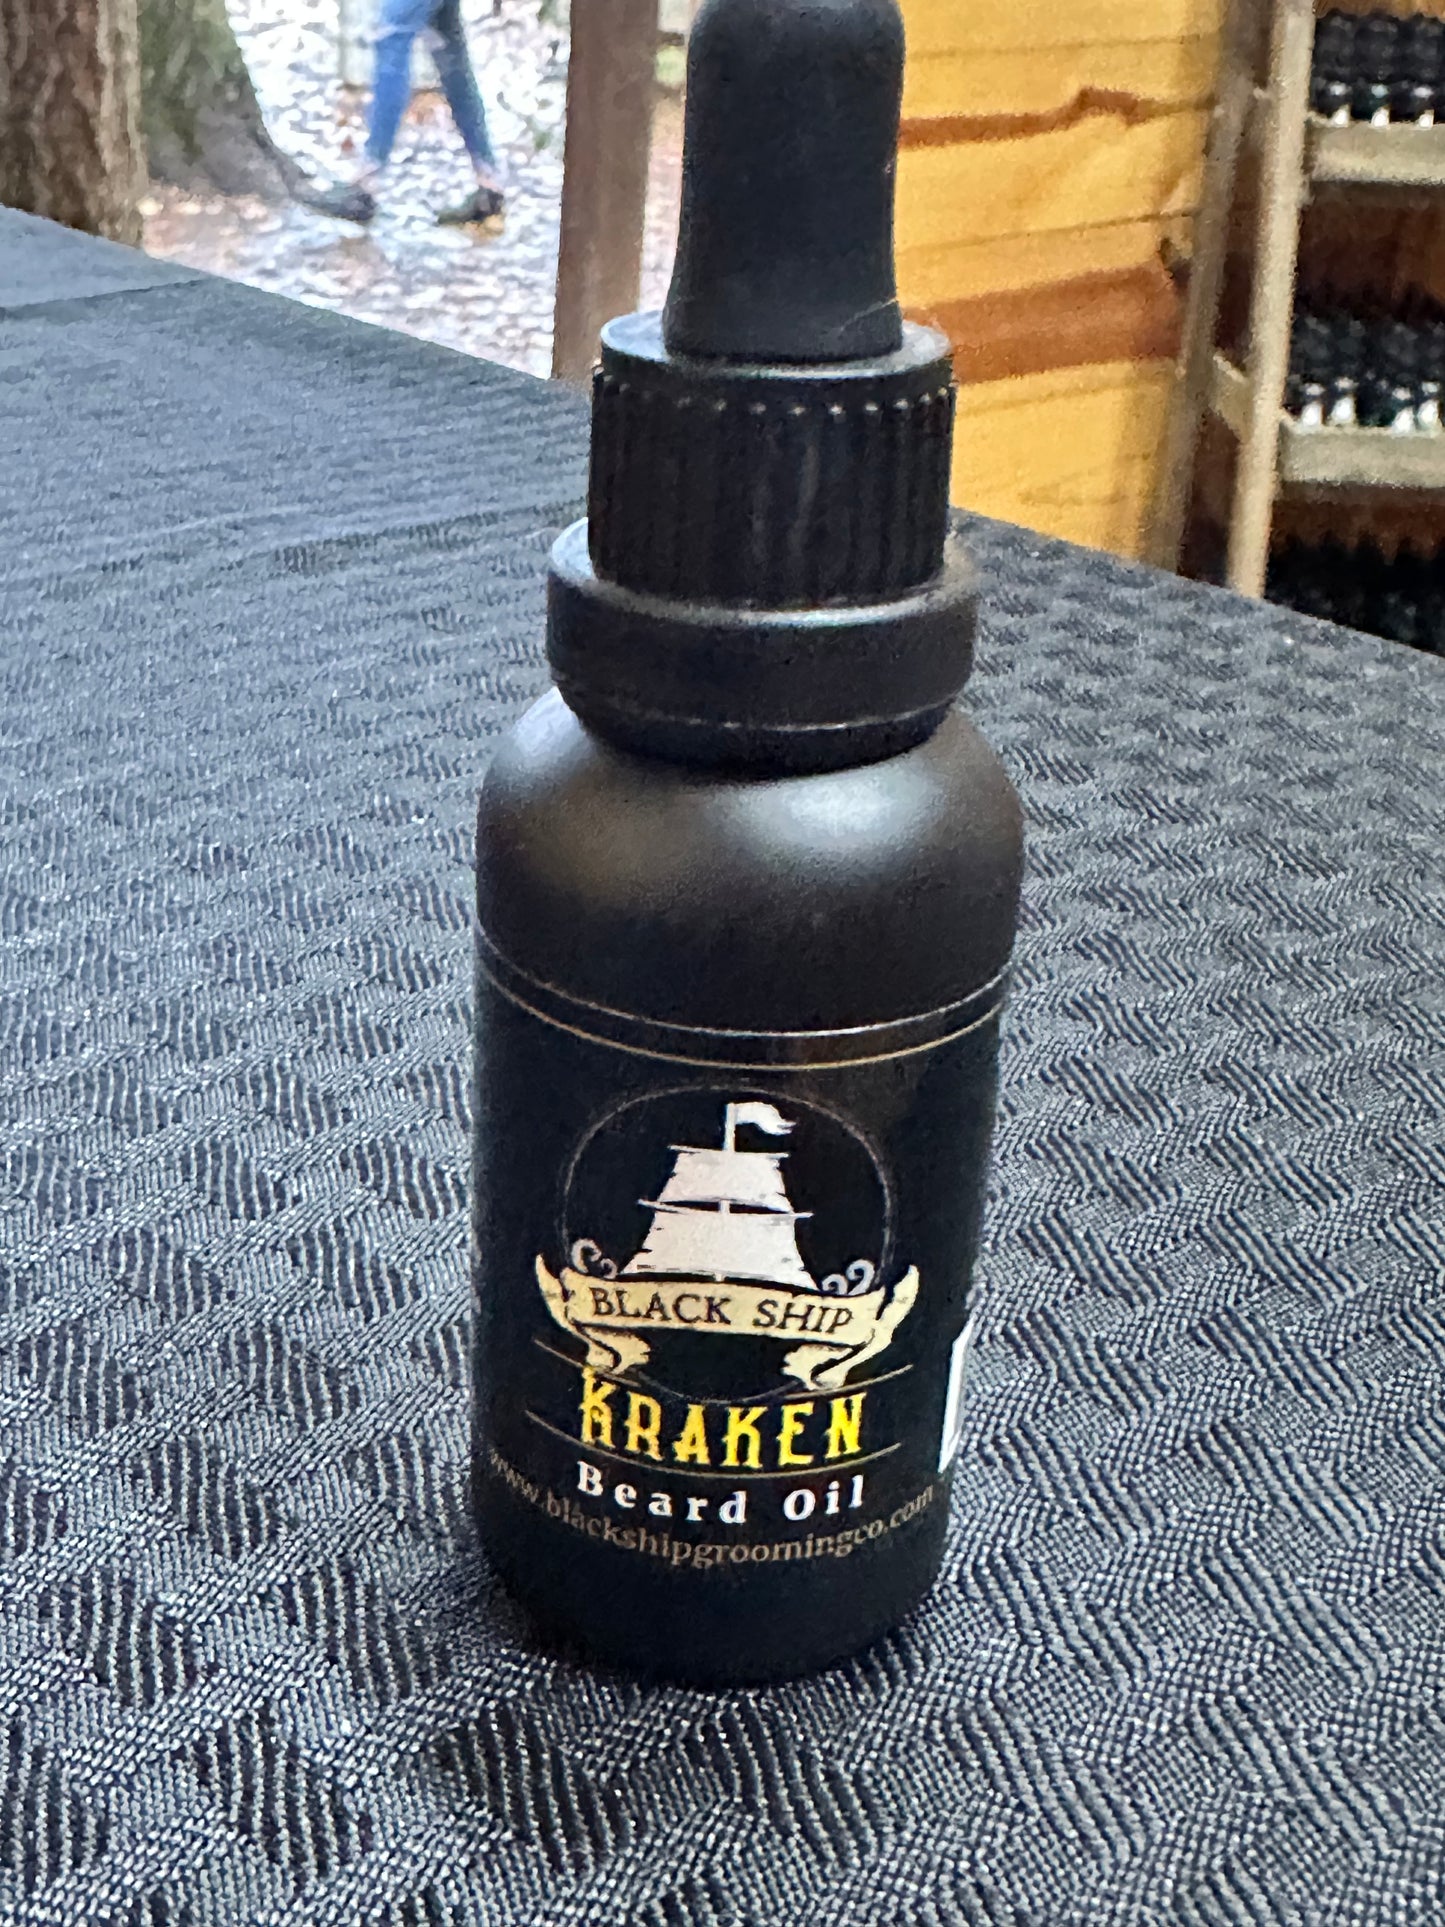 Kraken beard oil